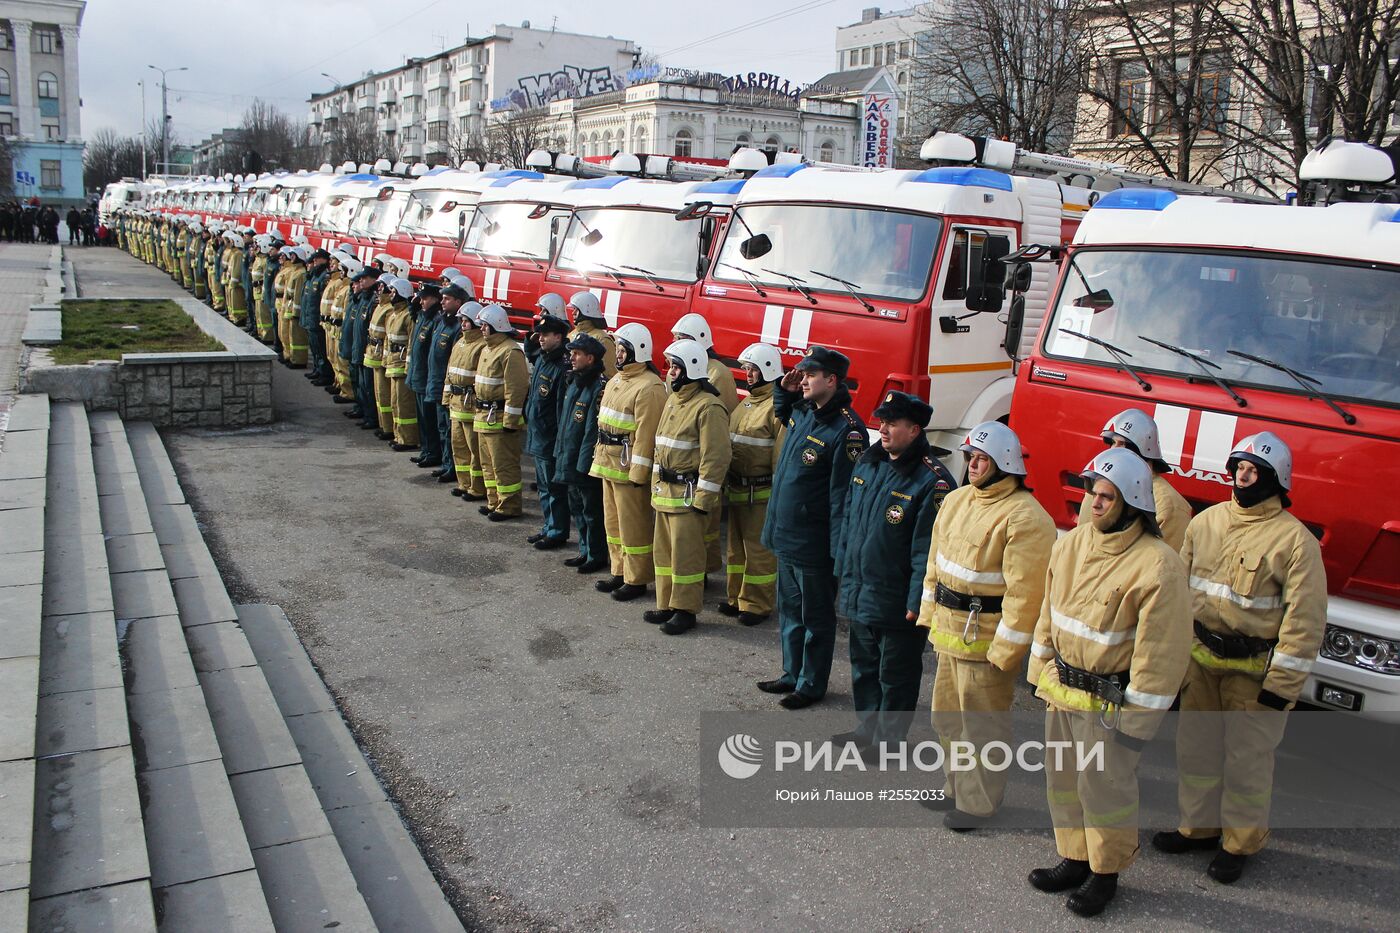 Глава МЧС РФ В.Пучков передал новую технику крымским спасателям